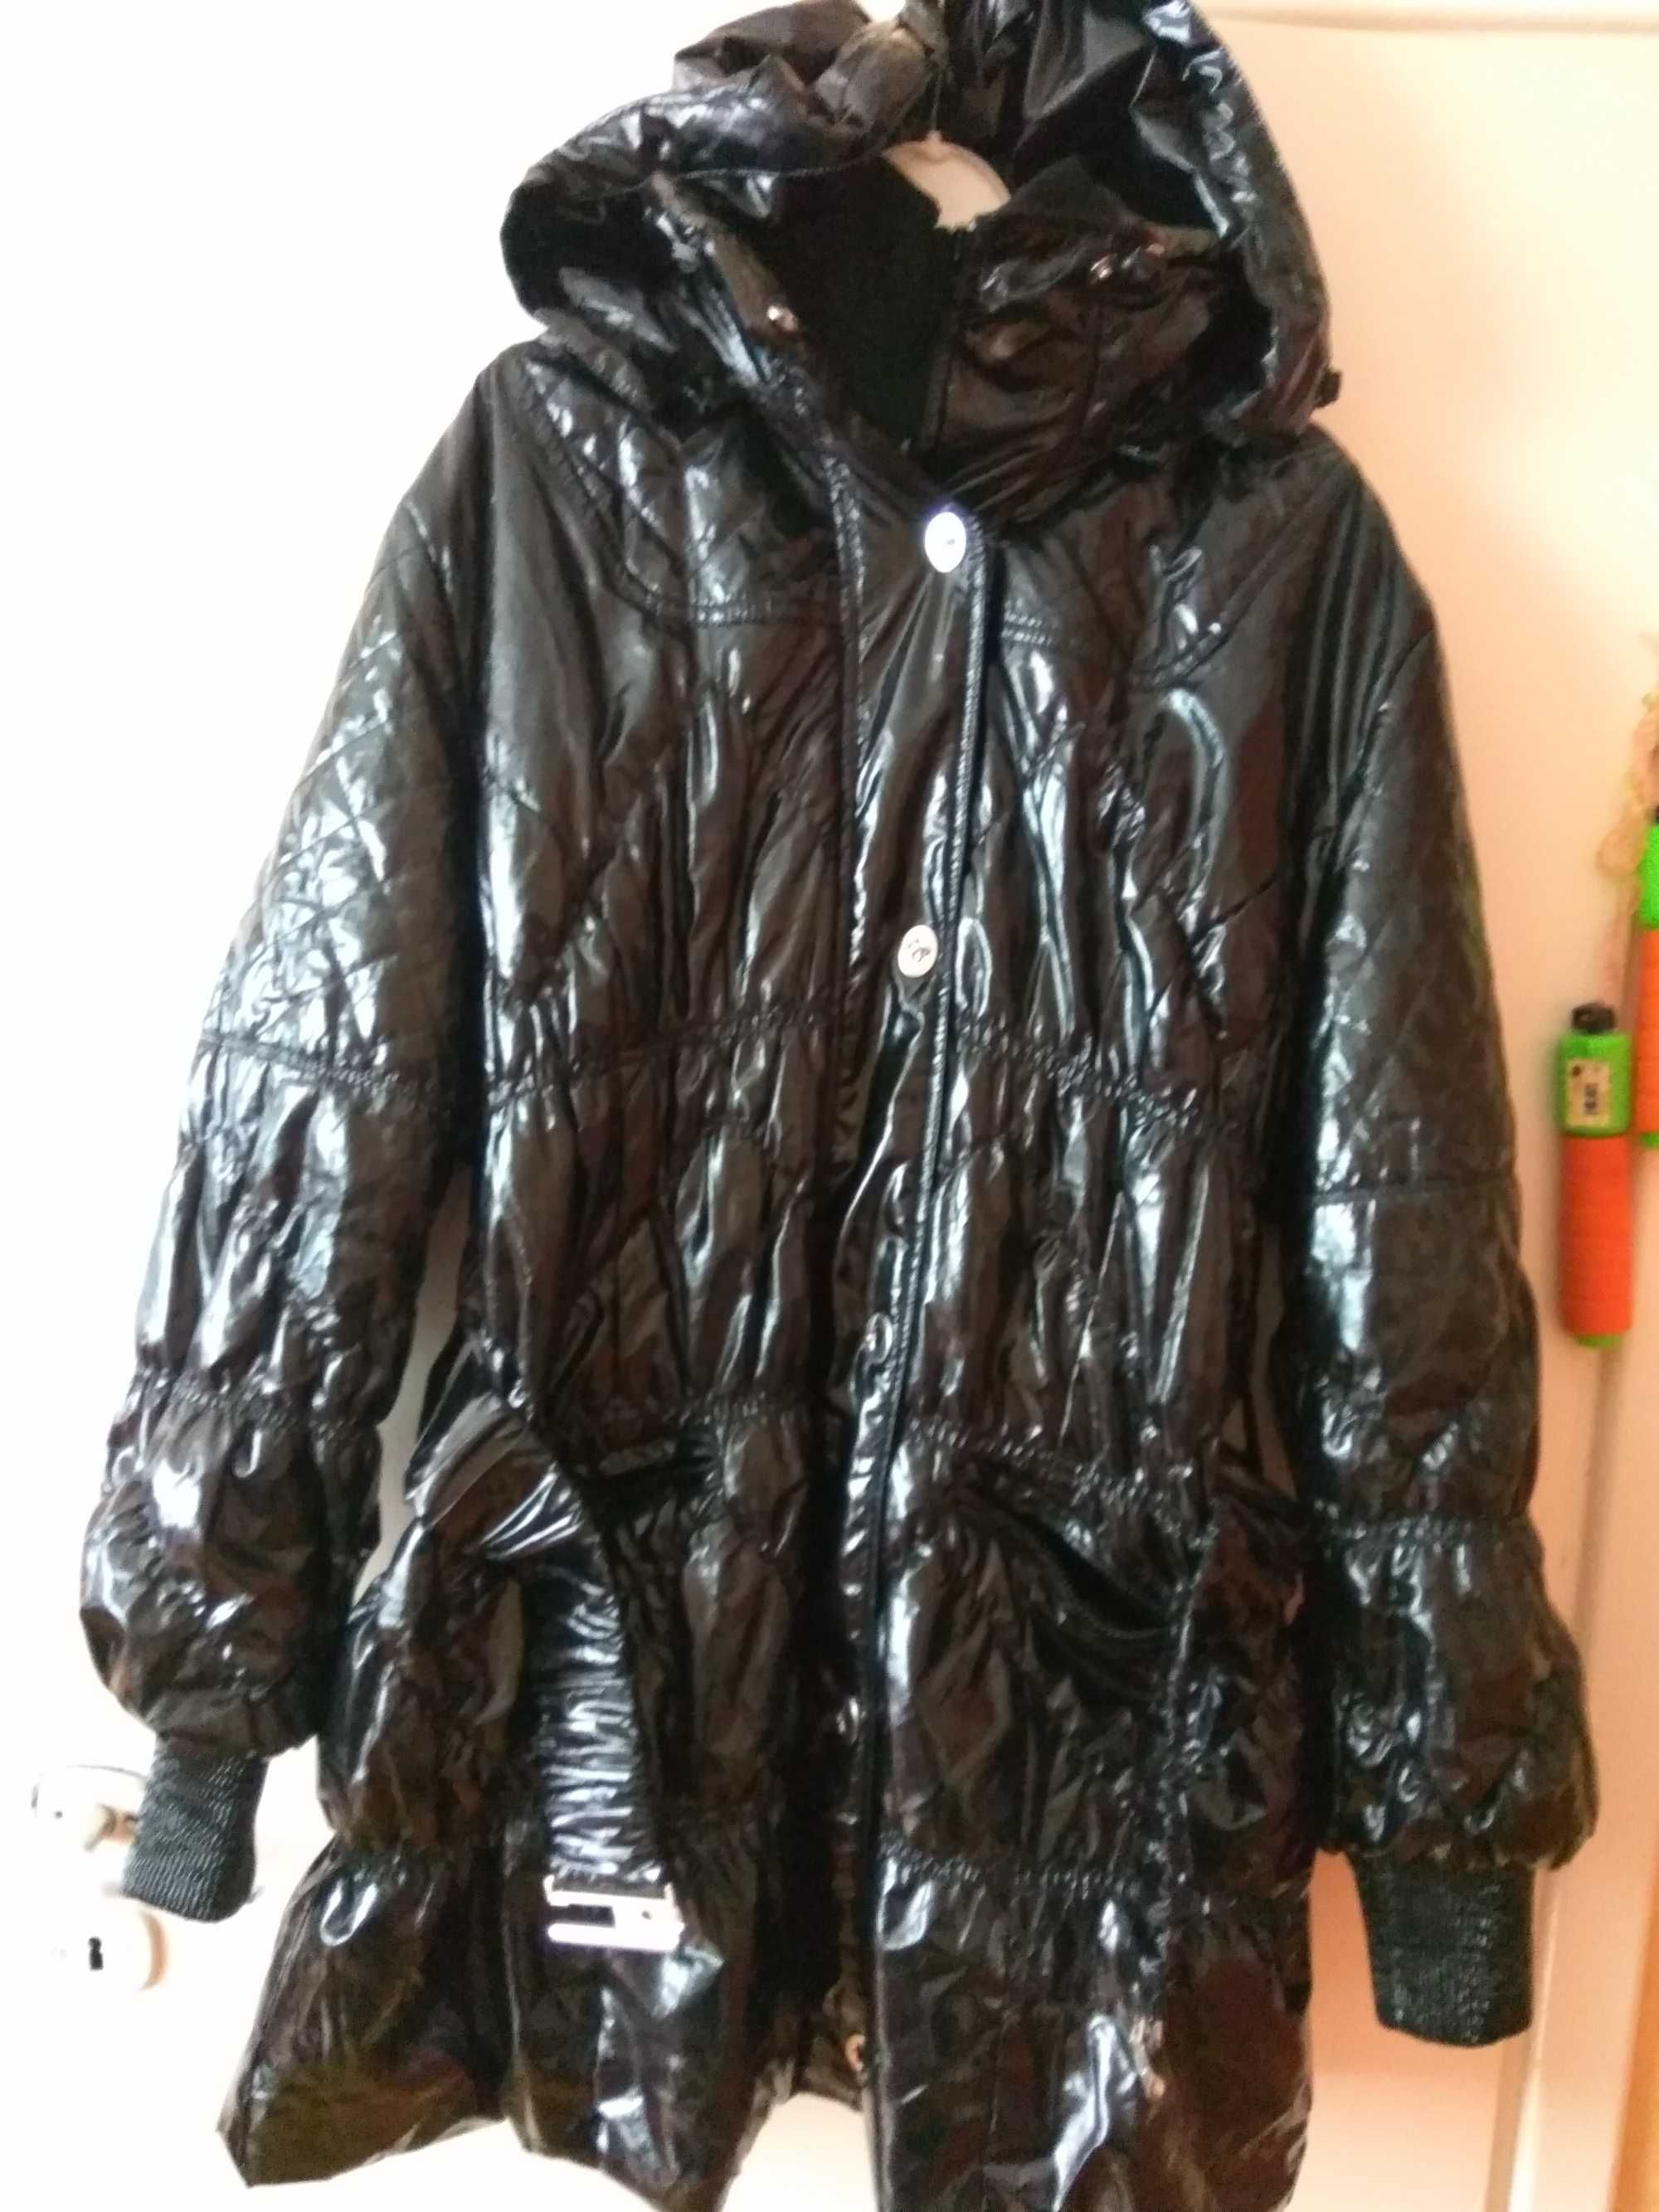 bardzo duza kurtka zimowa 4XL  szeleszcza pikowana czarna pachy 150 cm